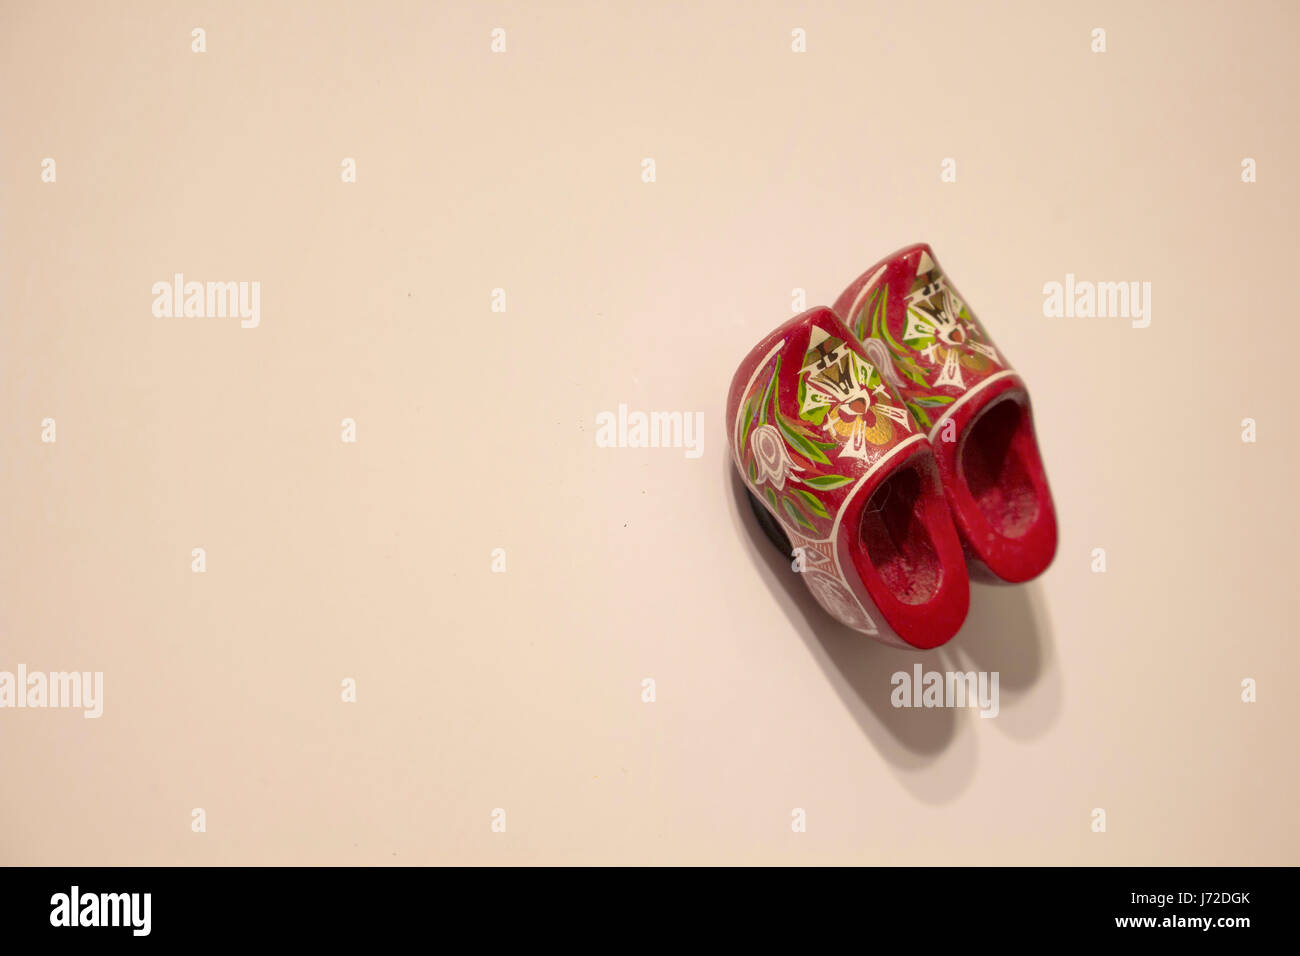 Vue rapprochée de l'aimant (bois isolé en forme de souvenir) Dutch slipper sur fond beige. Floral - fleurs sur elle. Banque D'Images